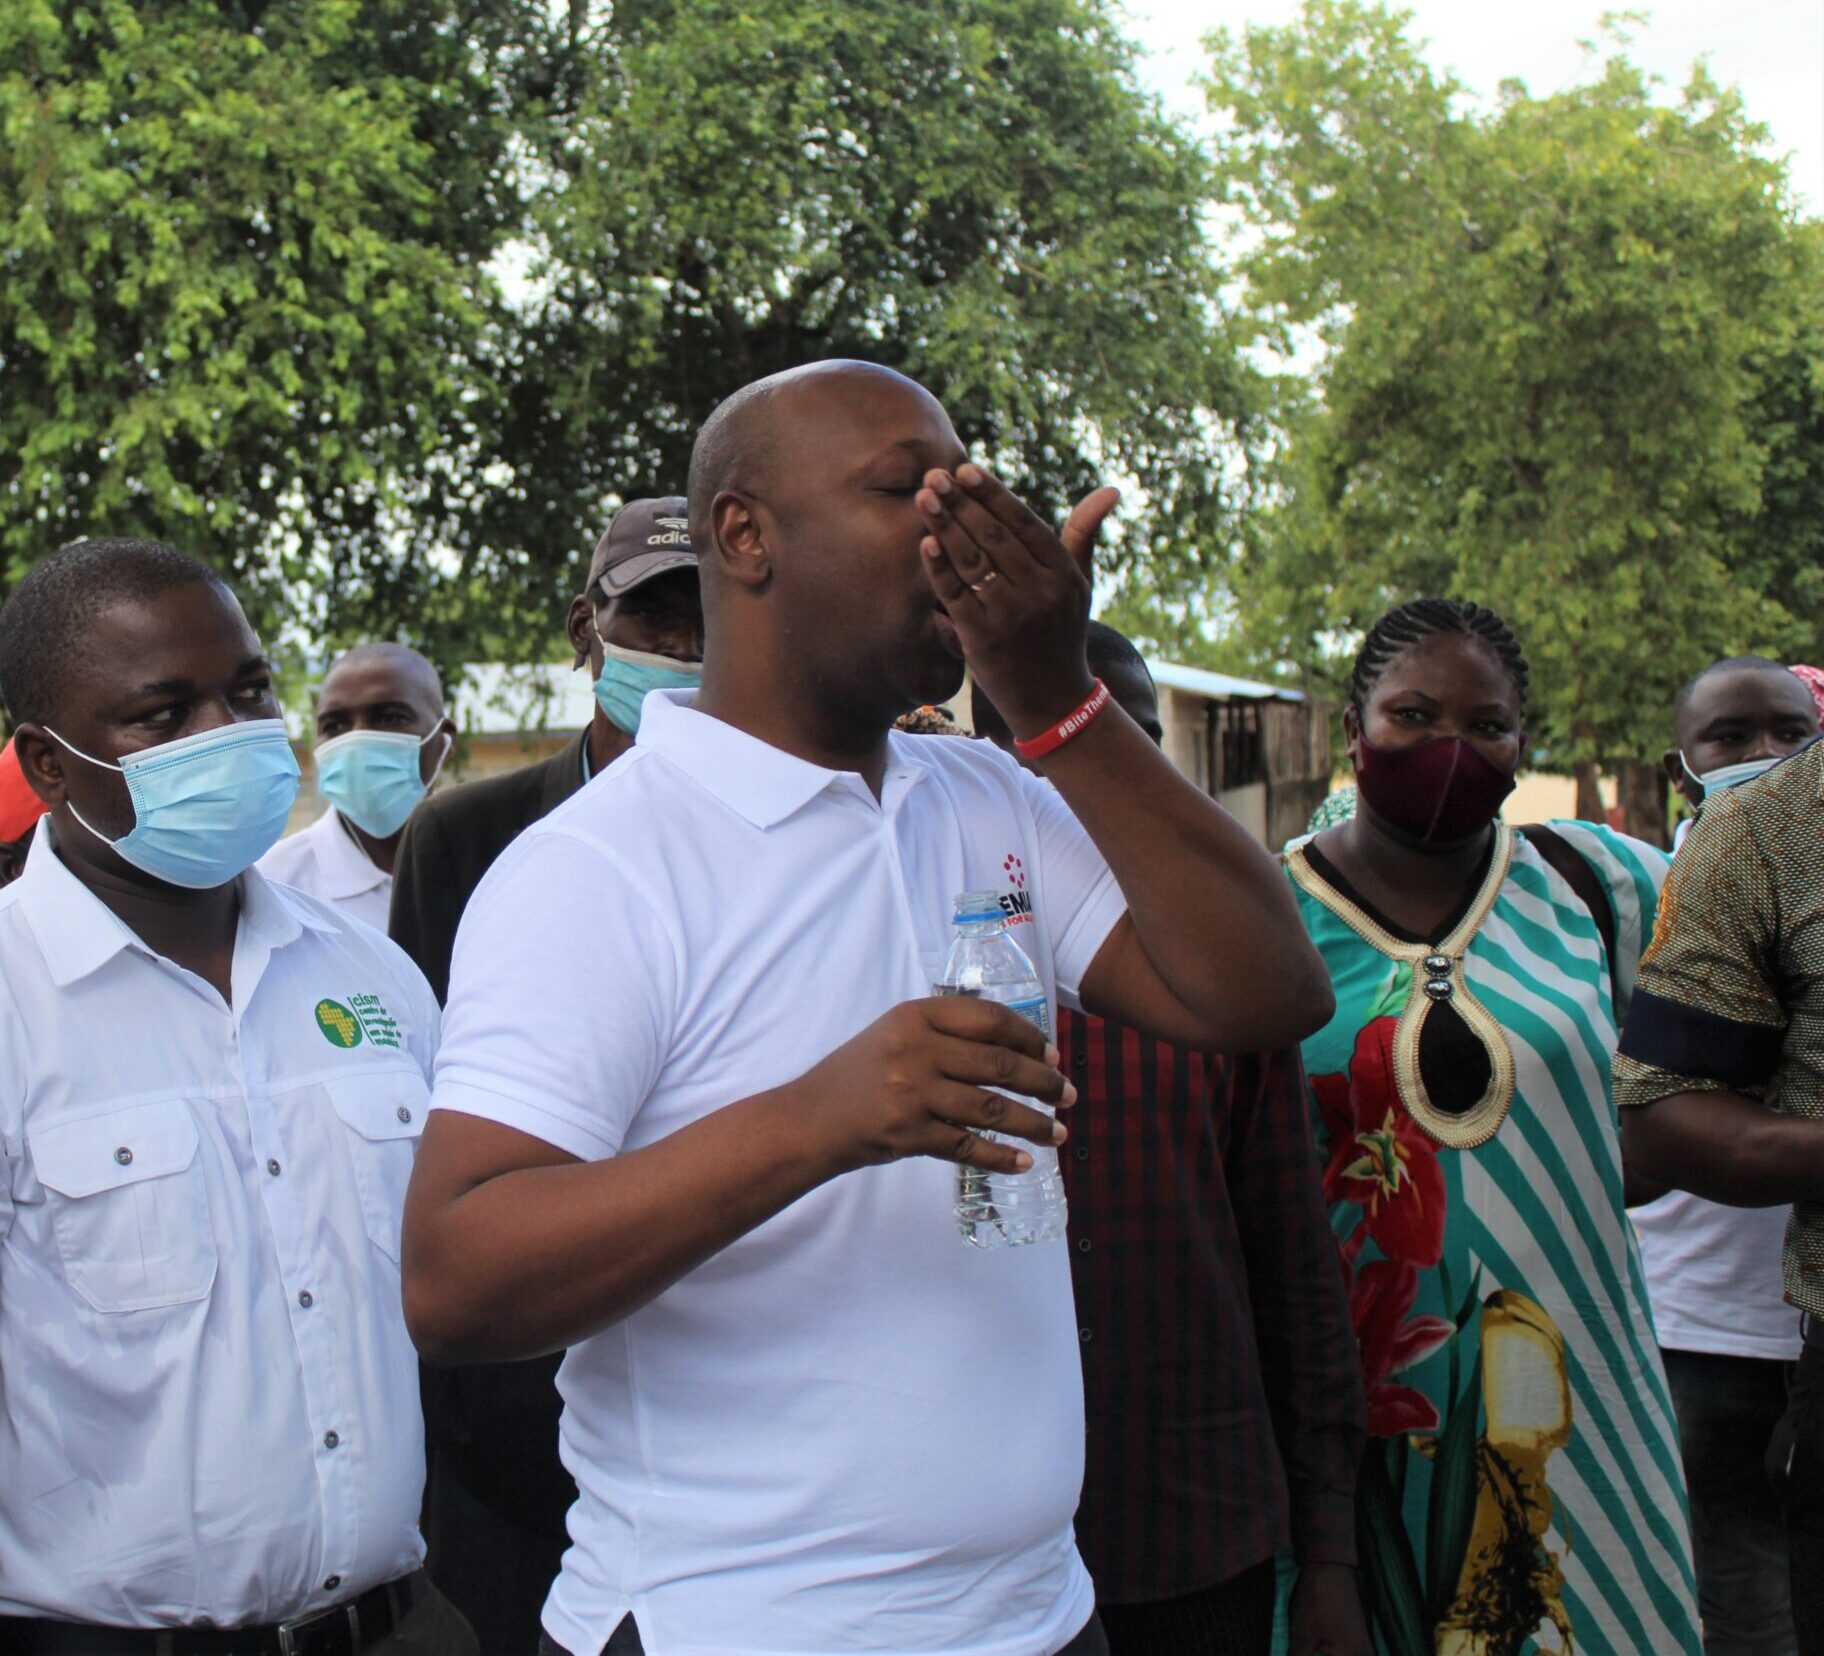 BOHEMIA lança a administração massiva de ivermectina em Moçambique para combater a malária